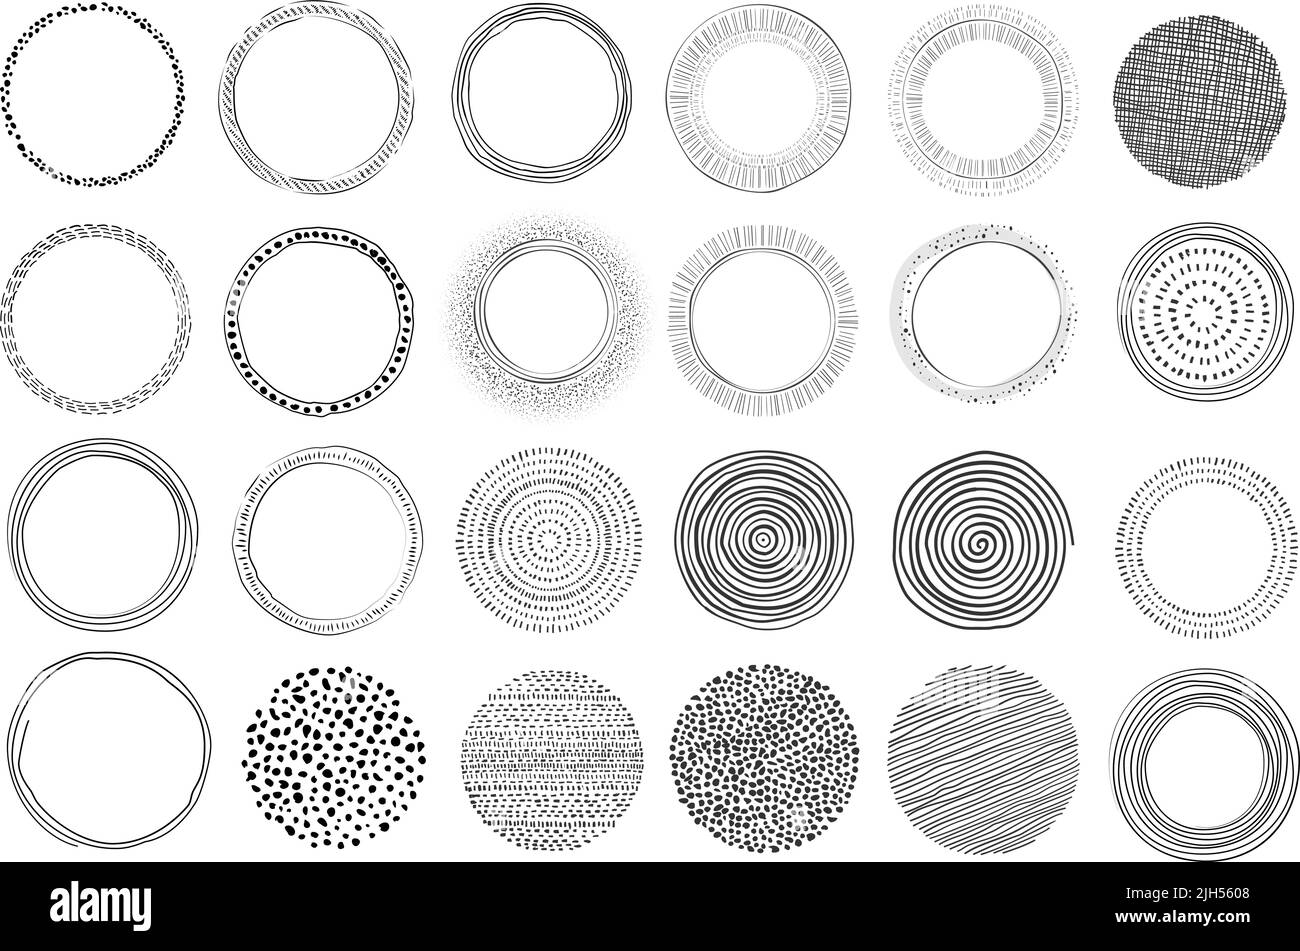 gran colección de elementos de diseño gráfico circular dibujados a mano, formas modernas aisladas sobre blanco, ilustración vectorial Ilustración del Vector